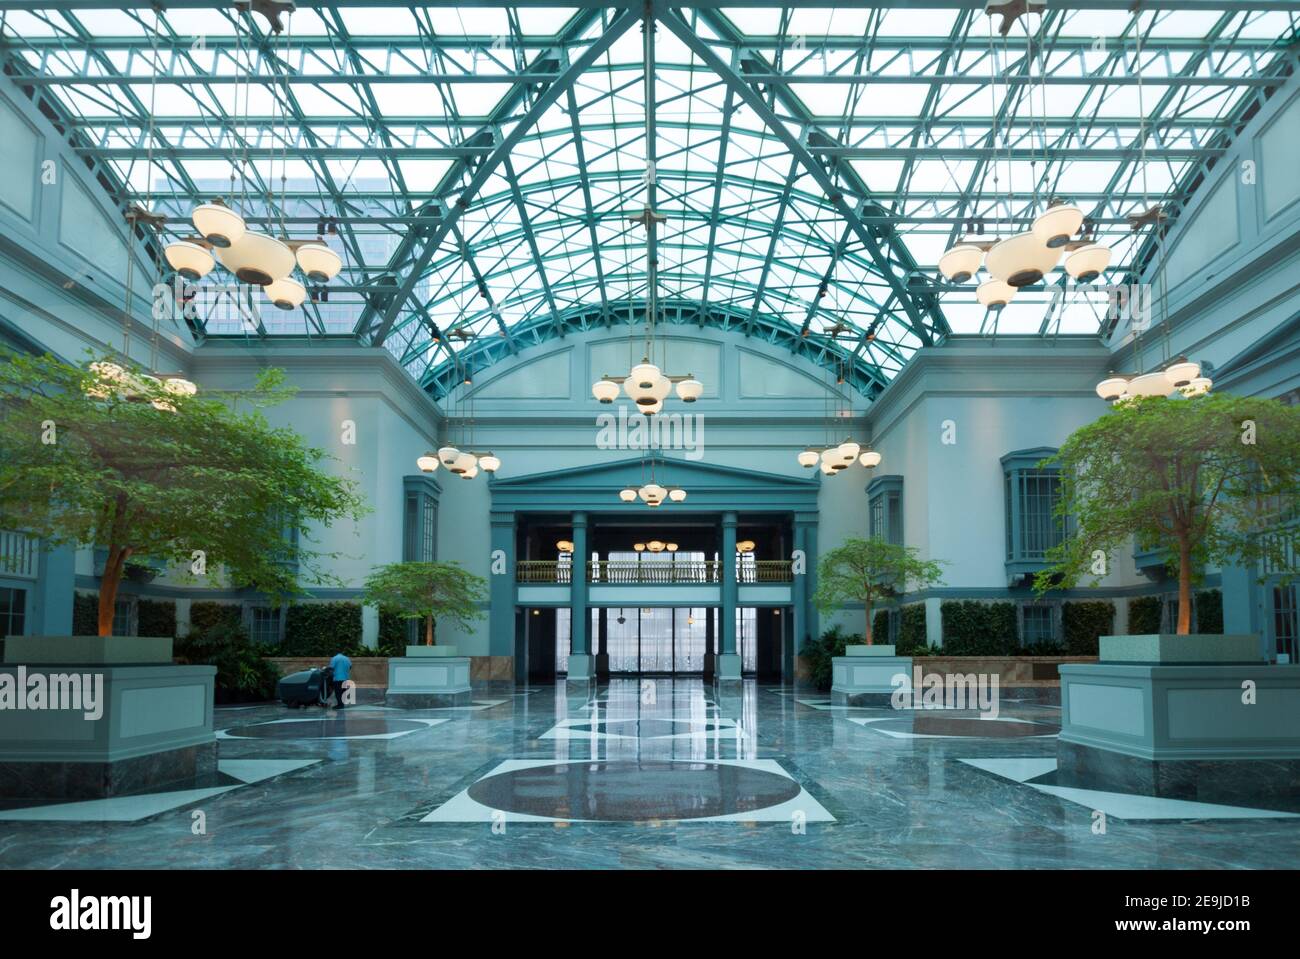 Der Wintergarten, das architektonische Highlight des Harold Washington Library Center in Chicago, Illinois. Stockfoto